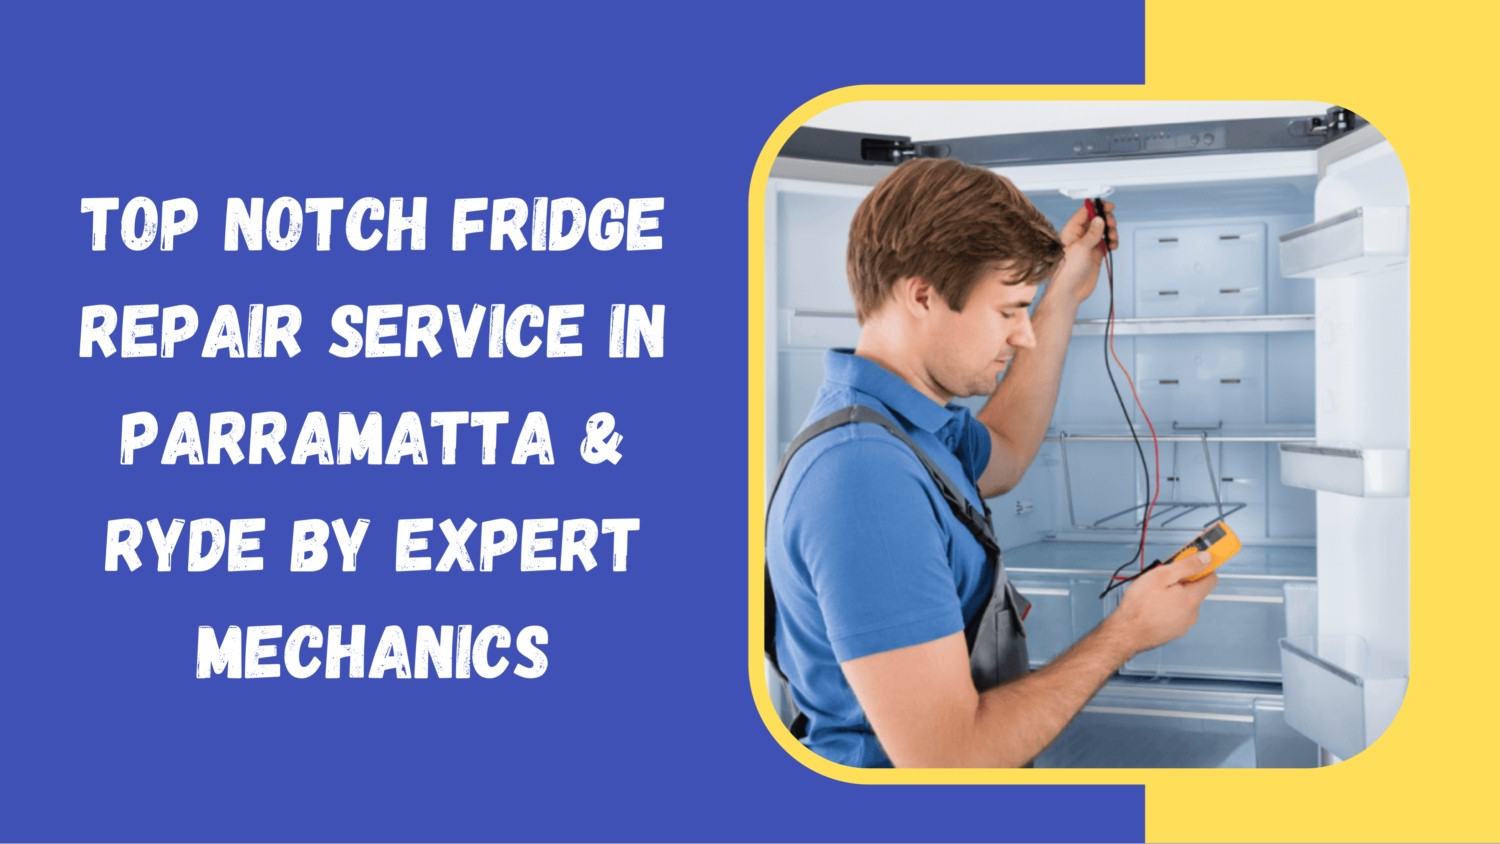 Top Notch Fridge Repair Service in Parramatta & Ryde by Expert Mechanics